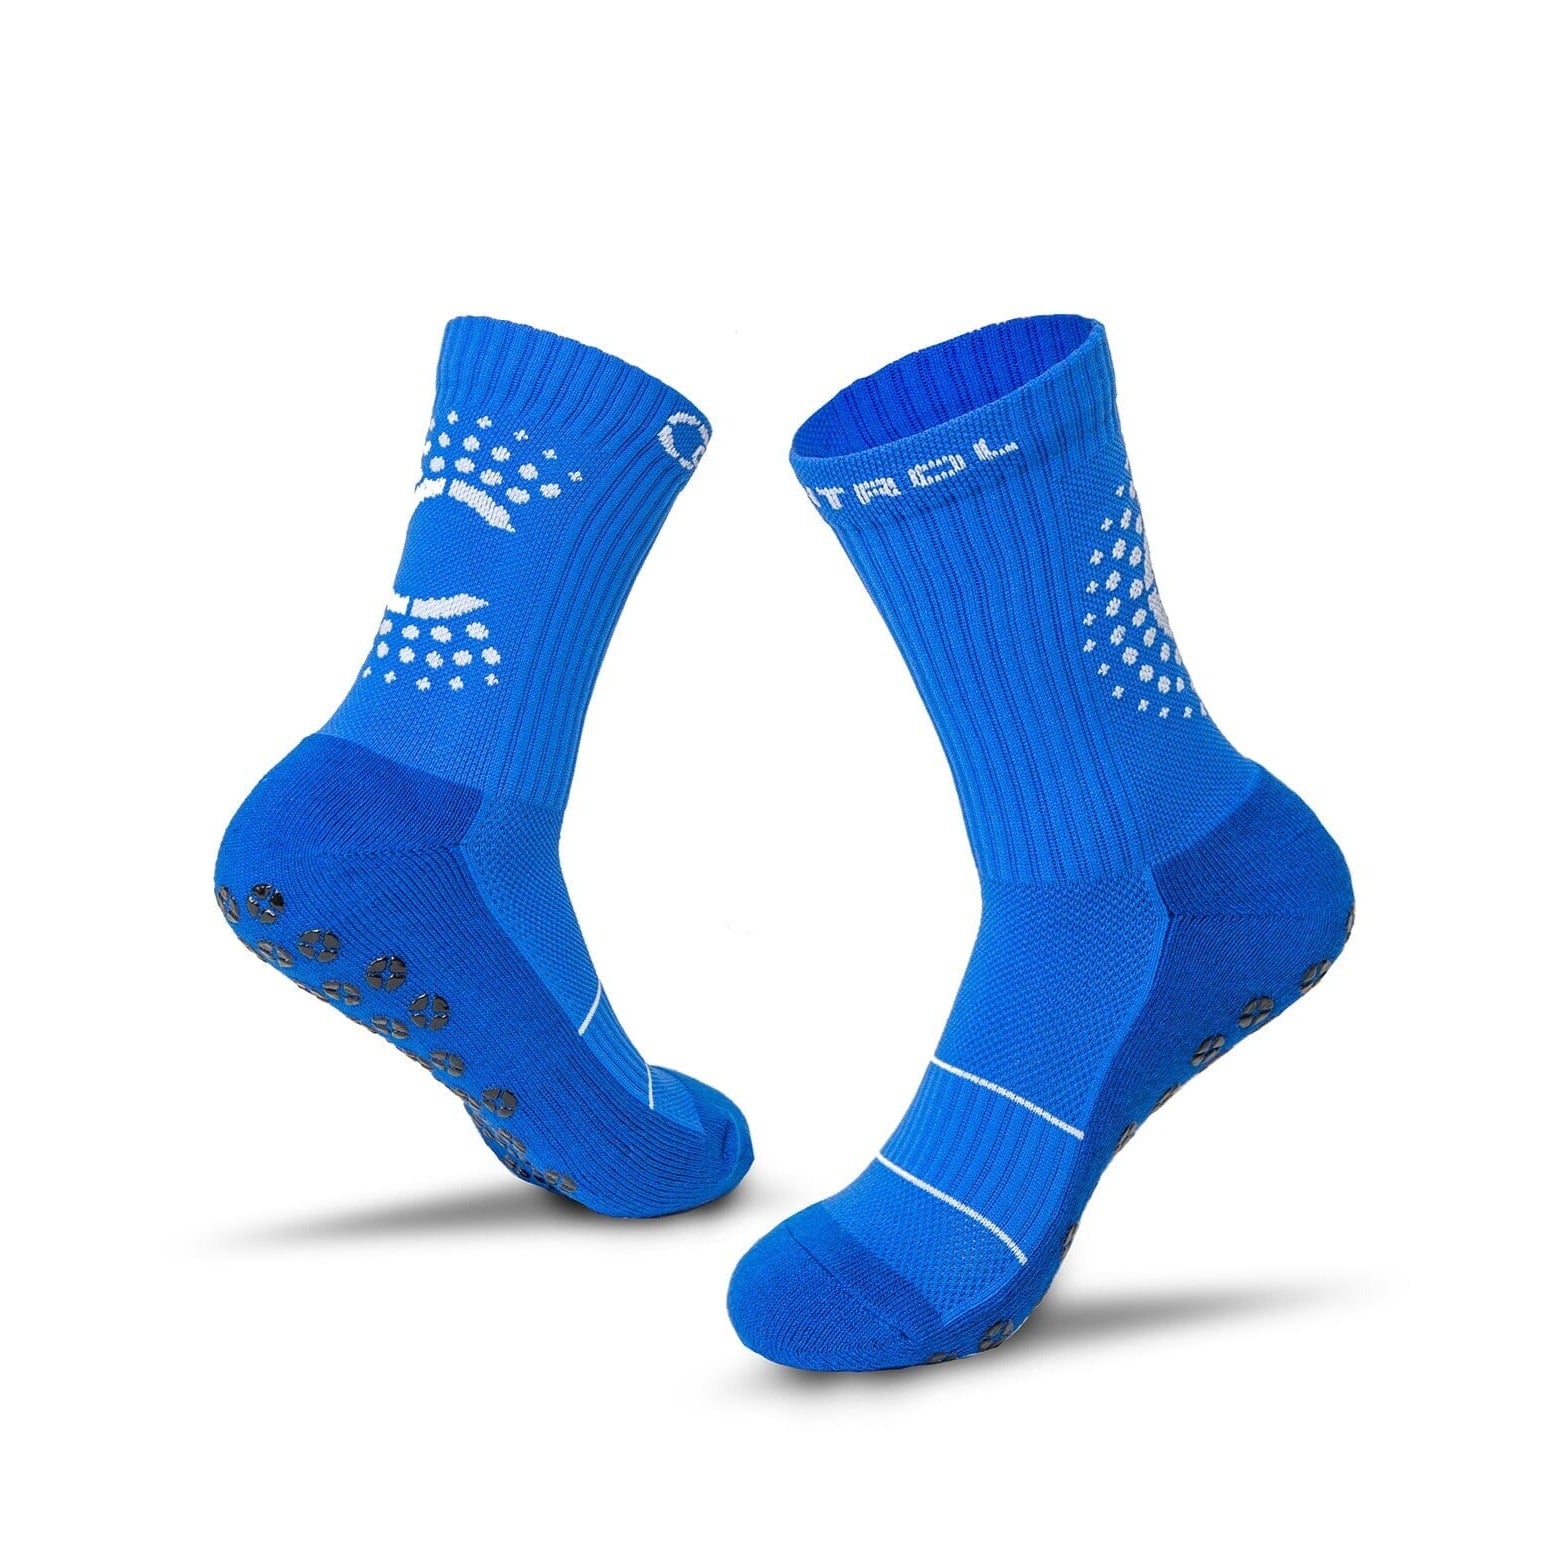 Control Sox 2.0 Grip Socks Control Sox S/M (US 5-8.5) Blue 